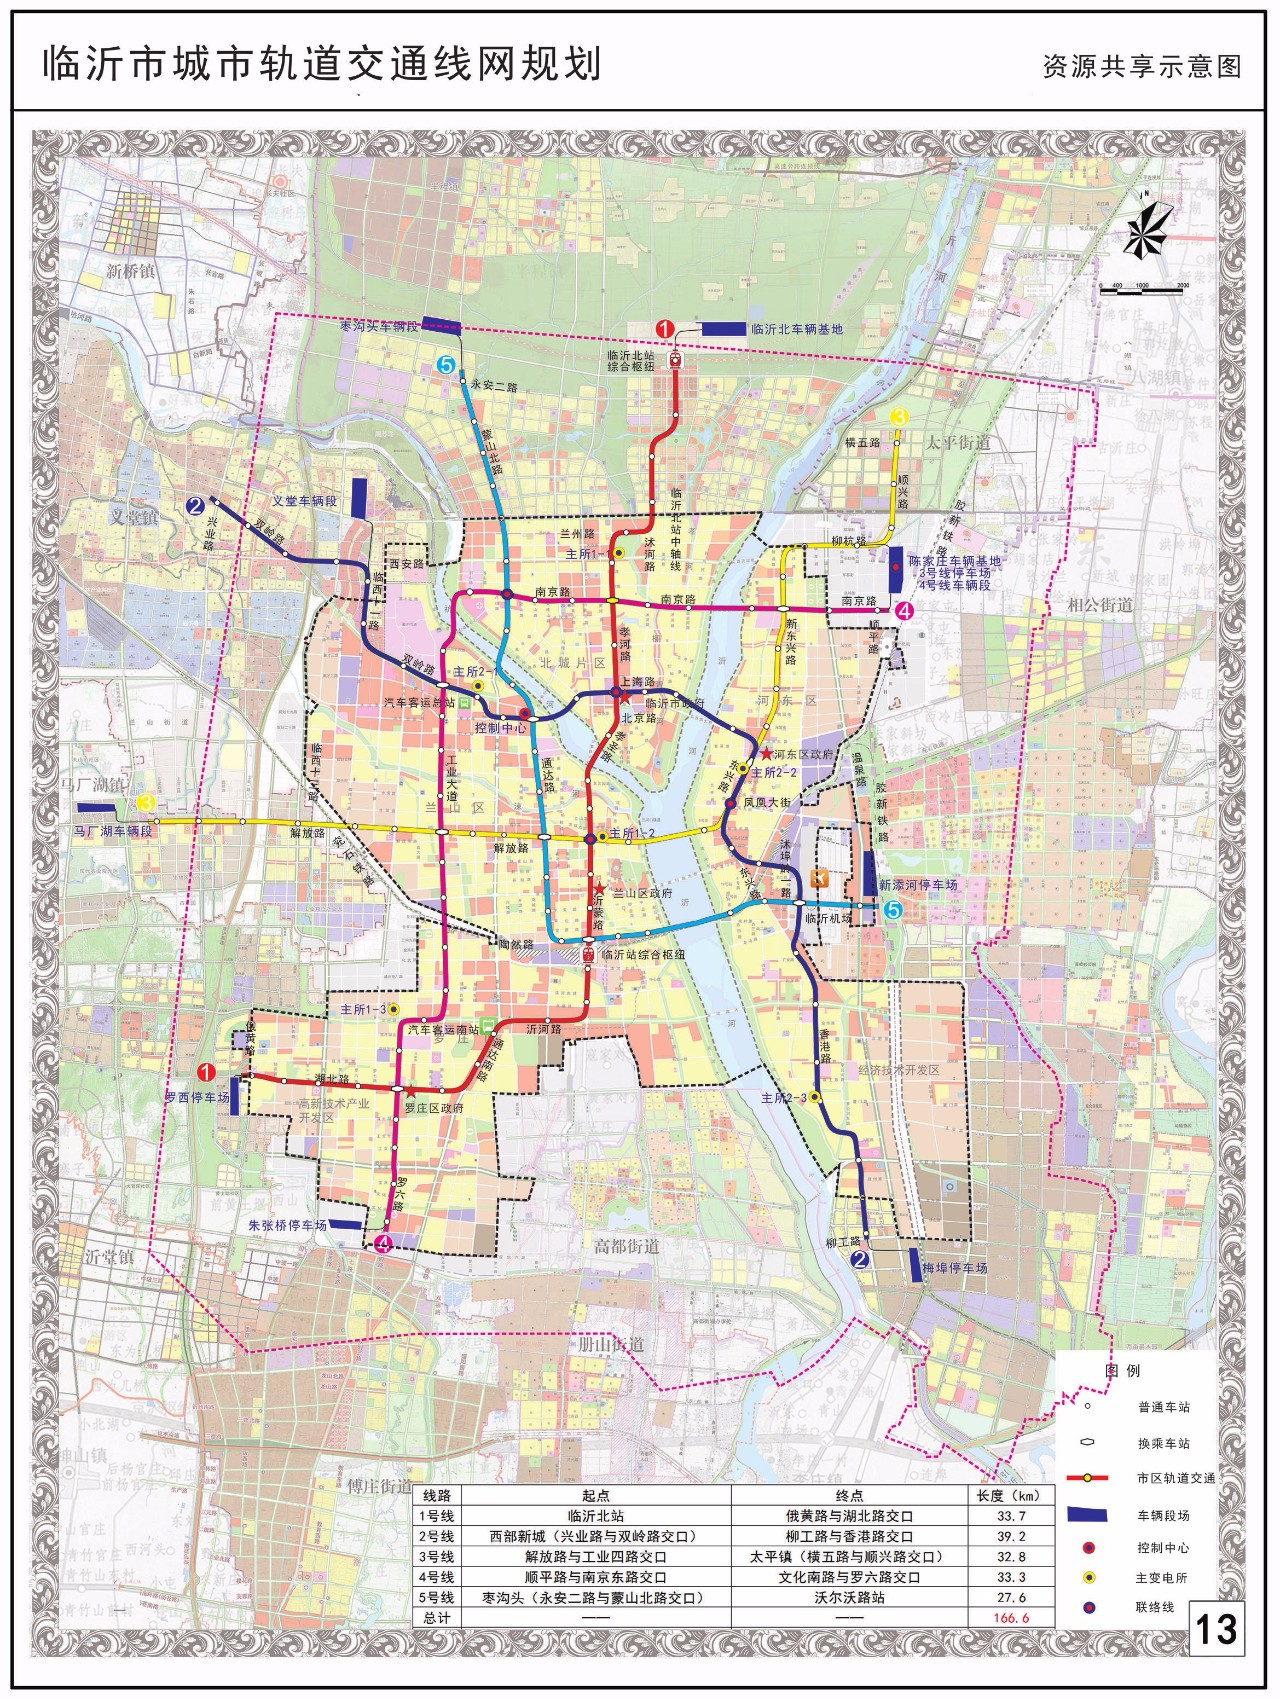 临沂市正式发布城市轨道交通线网规划!快看看经不经过